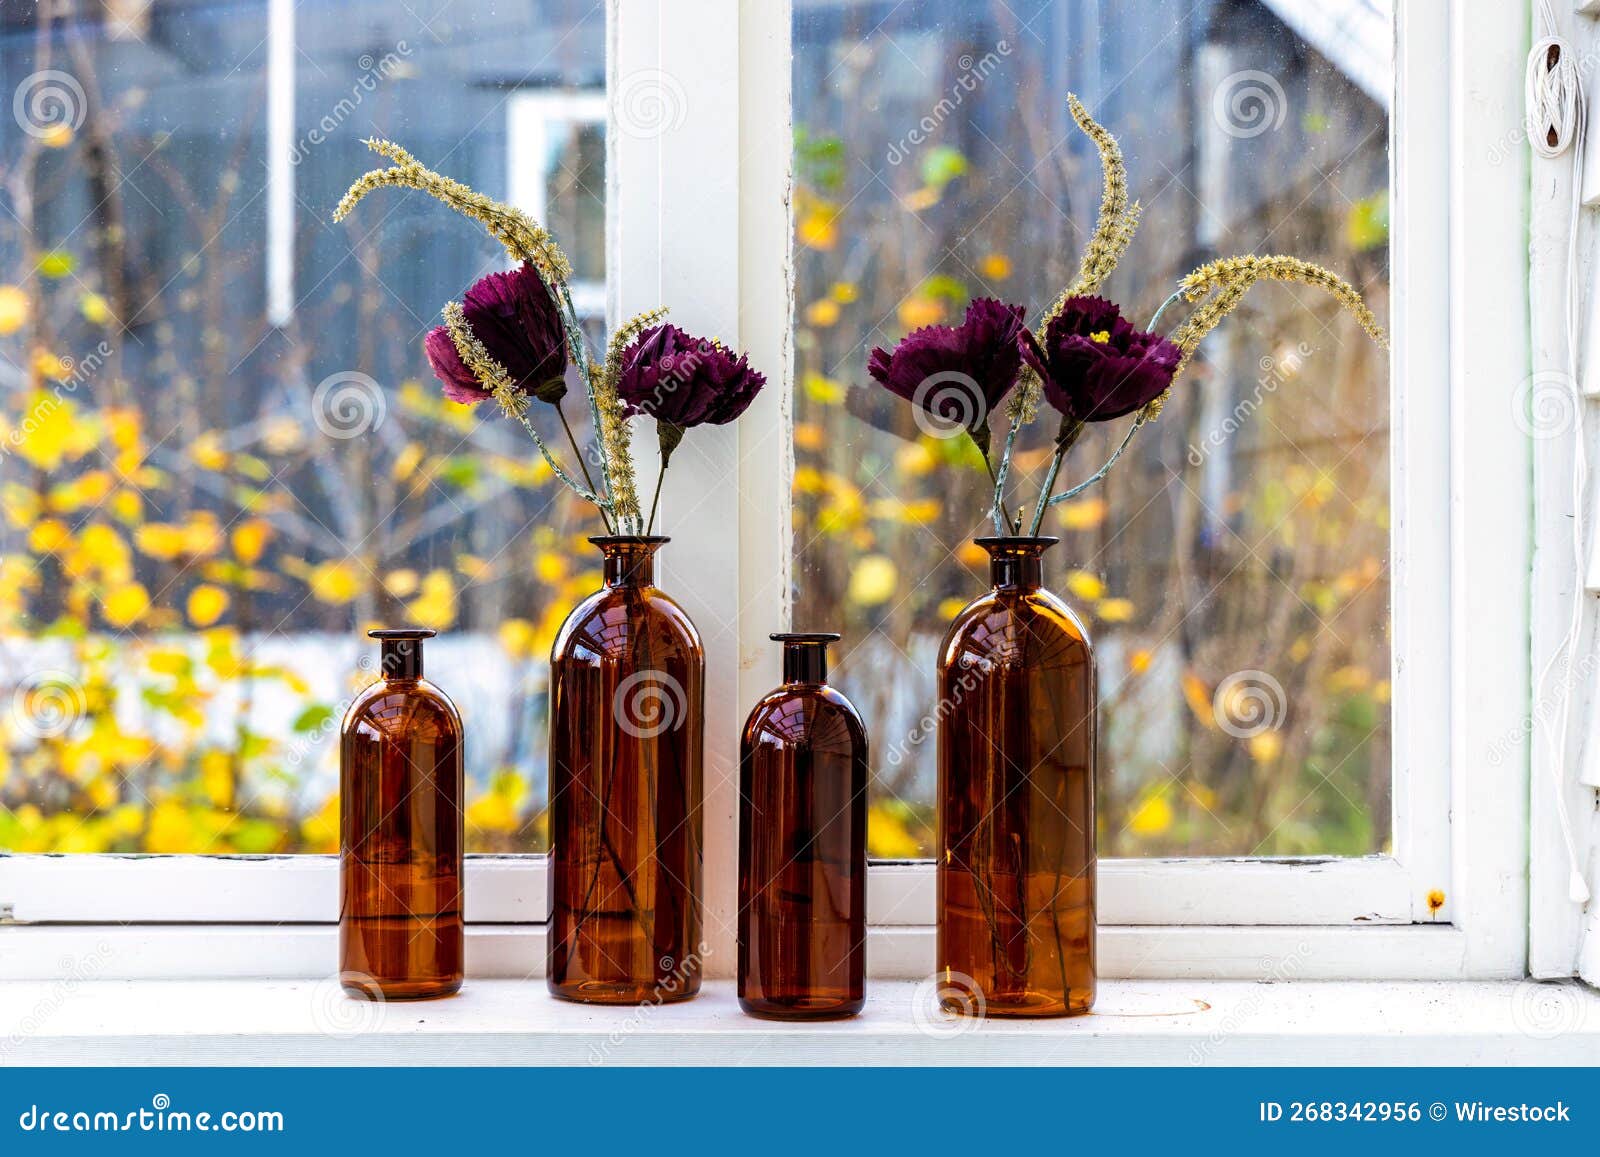 Confezioni Di Bottiglie Decorative Marroni Destinate a Vasi Per